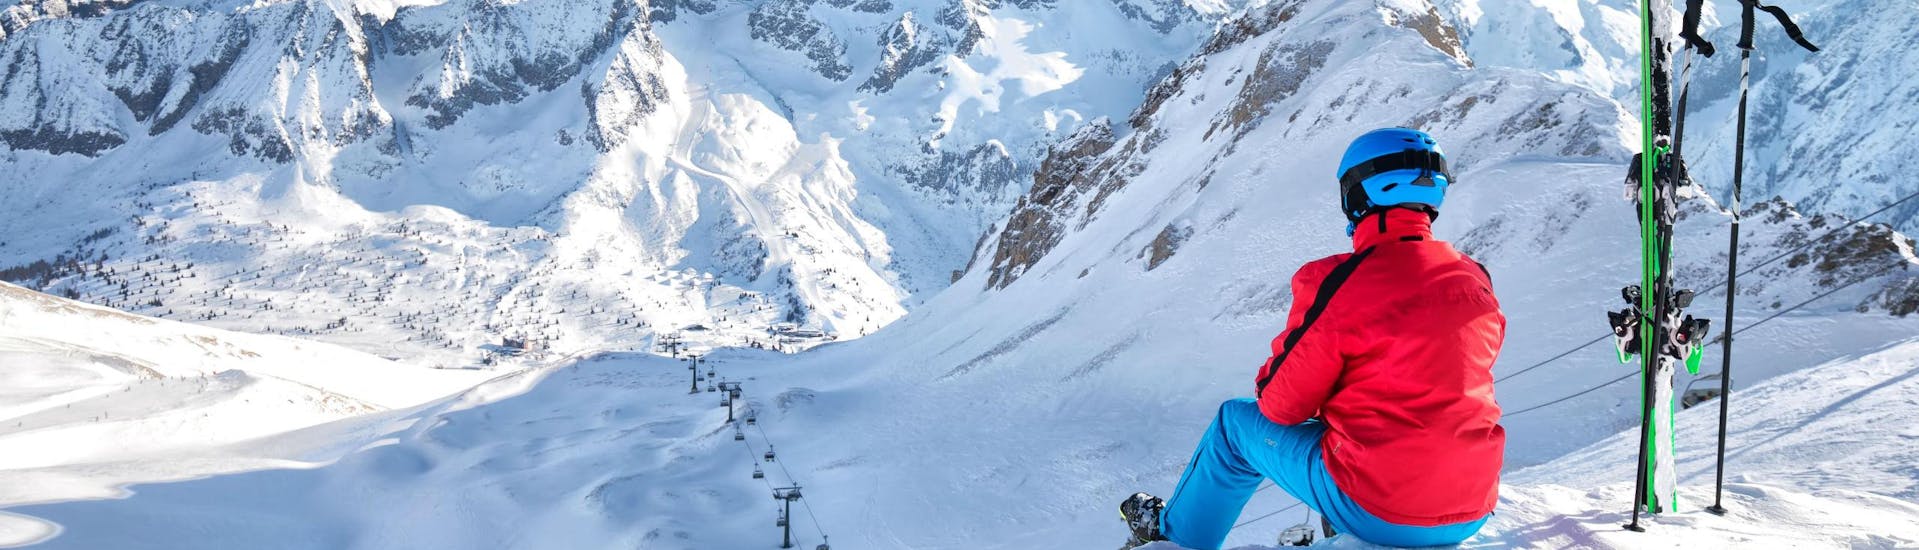 Uno sciatore sta facendo una pausa durante una delle lezioni di sci nel comprensorio sciistico di Ponte di Legno ammirando il panorama innevato mozzafiato.